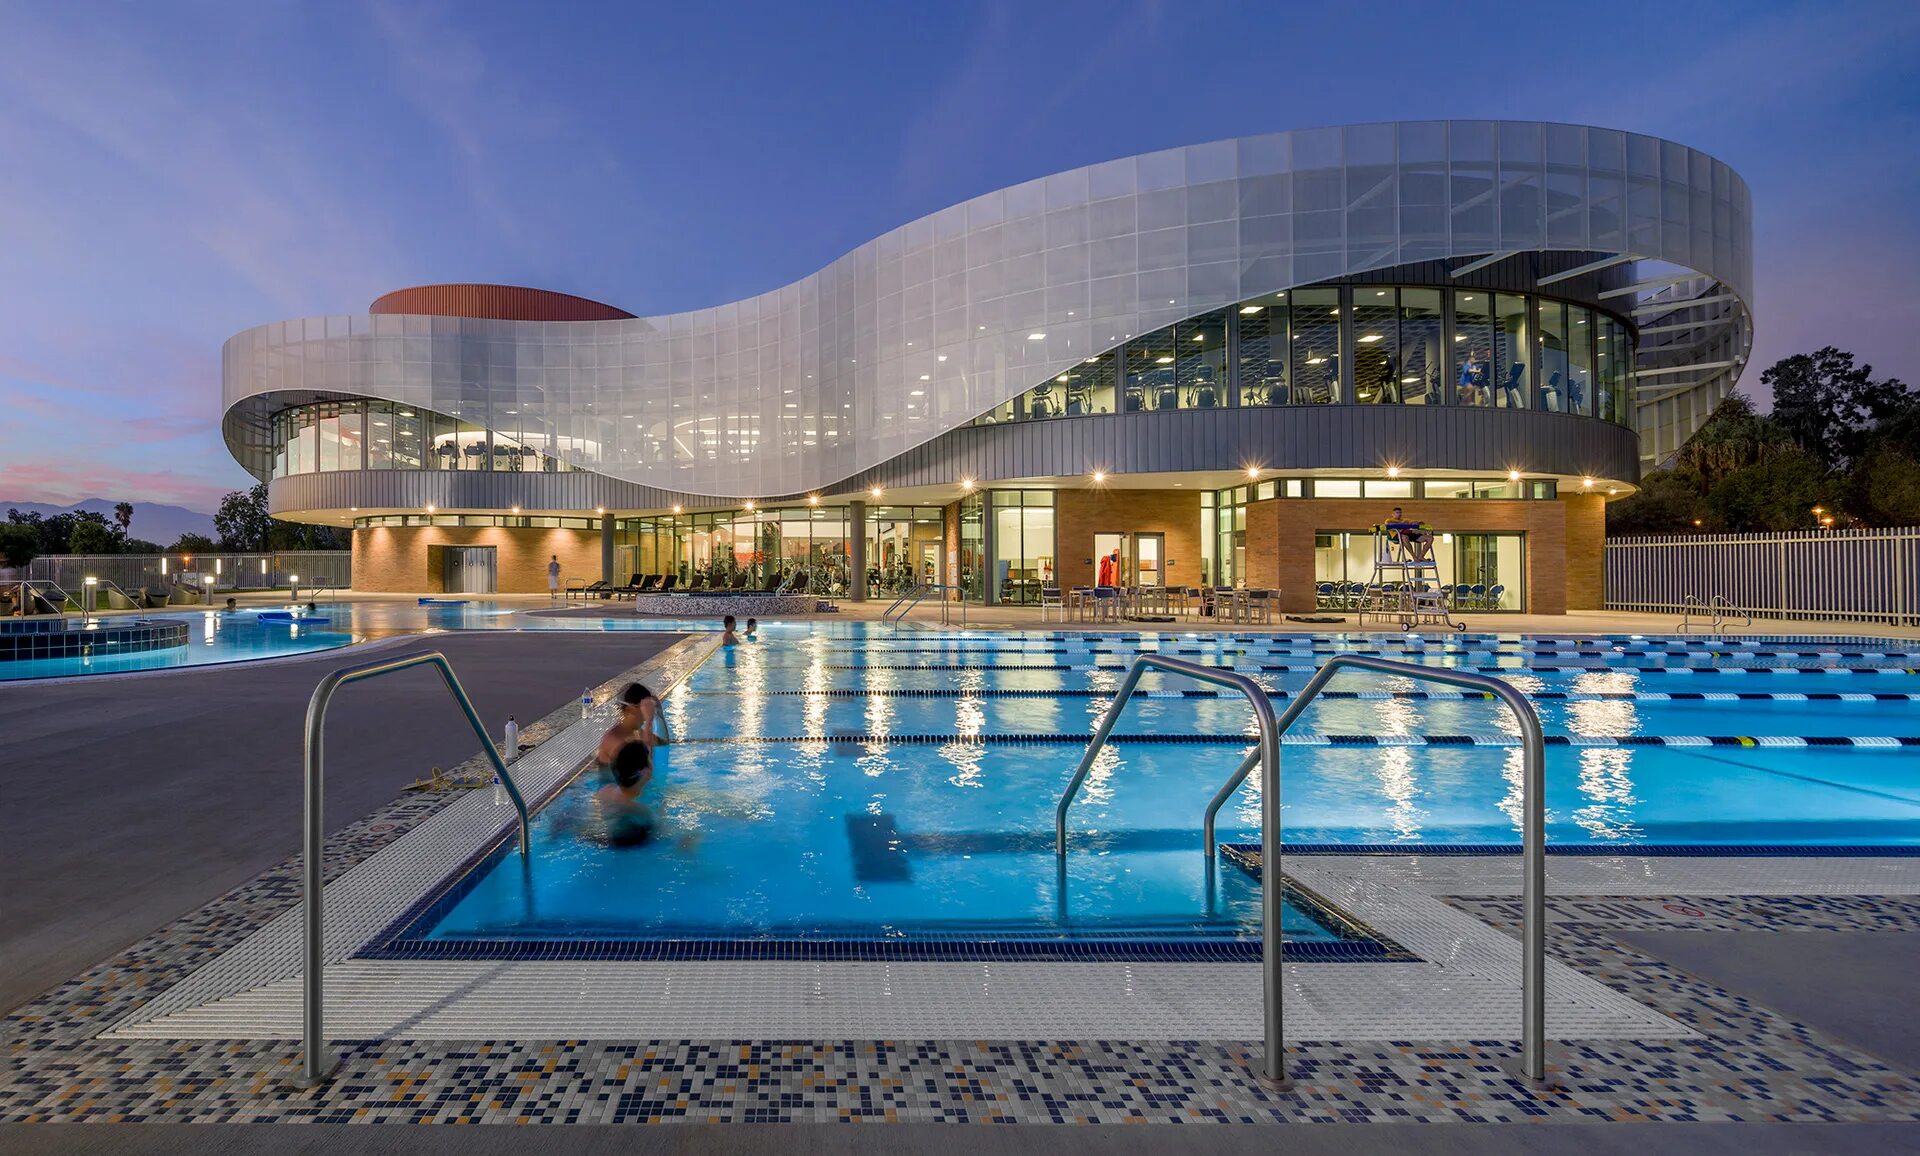 Спорткомплекс в Риверсайде, Калифорния. Спортивный центр с бассейном в Германии архитектура. Многофункциональный центр STADSHUISNIEUWEGEIN, Нидерланды. Фитнес центр здание арх Дейли.